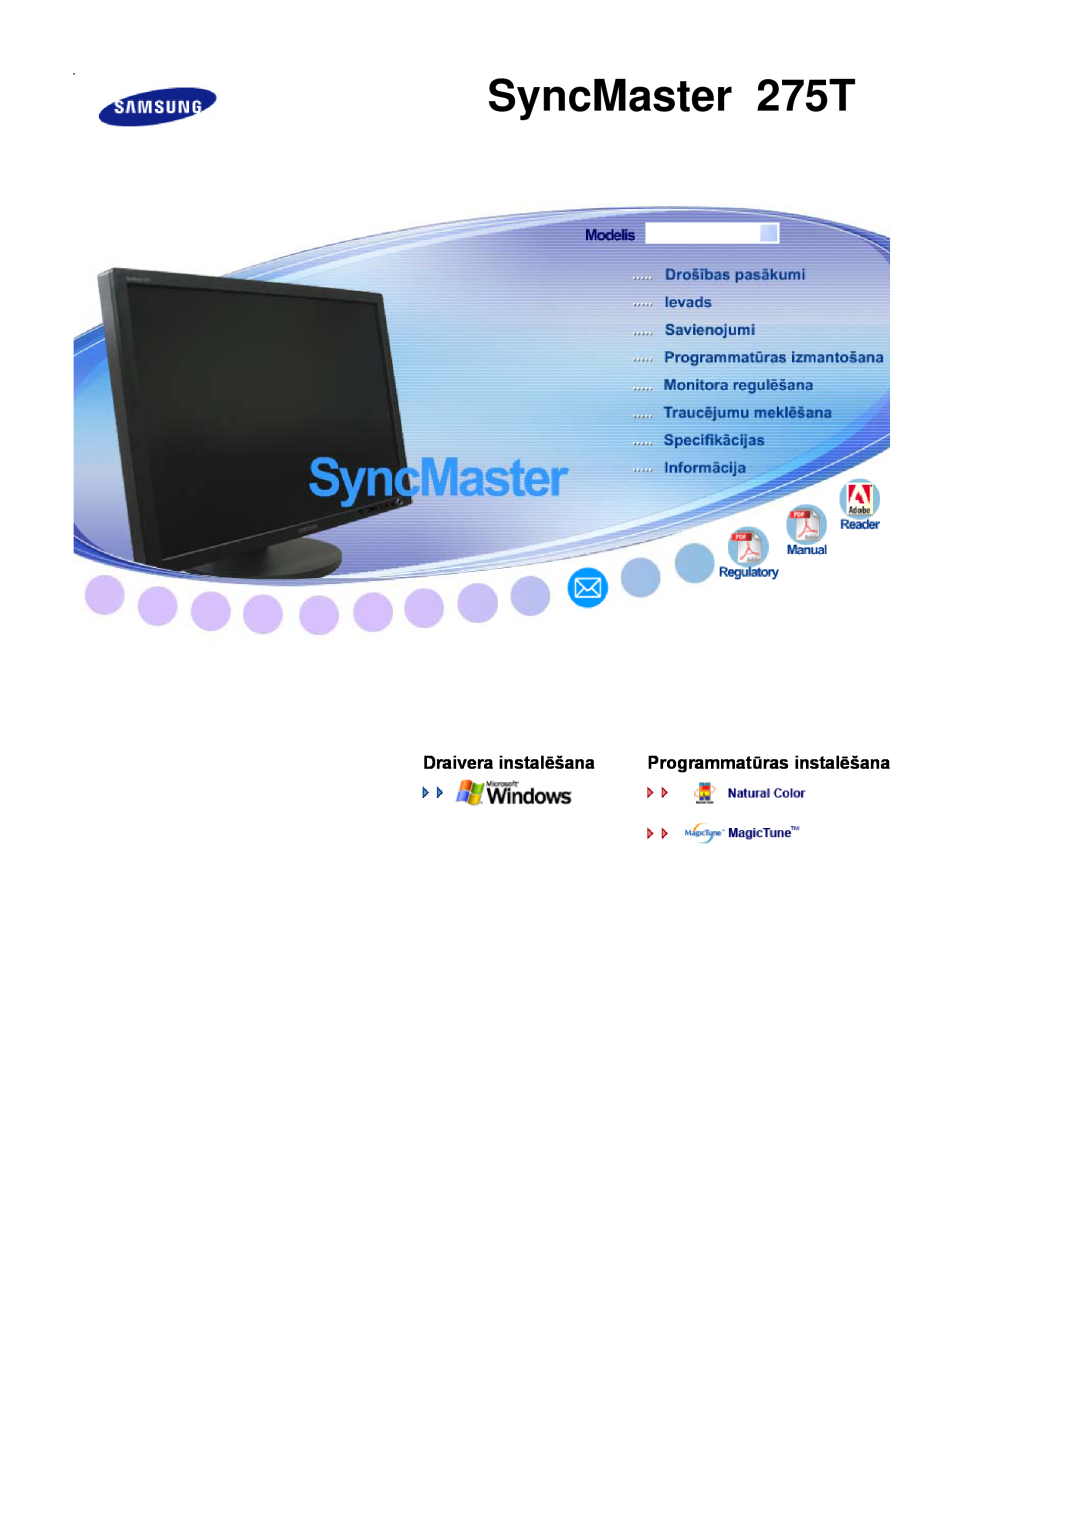 Samsung LS27HUBCBS/EDC, LS27HUBCB/EDC manual SyncMaster 275T, Monitorvezérlő telepítése Programtelepítés 